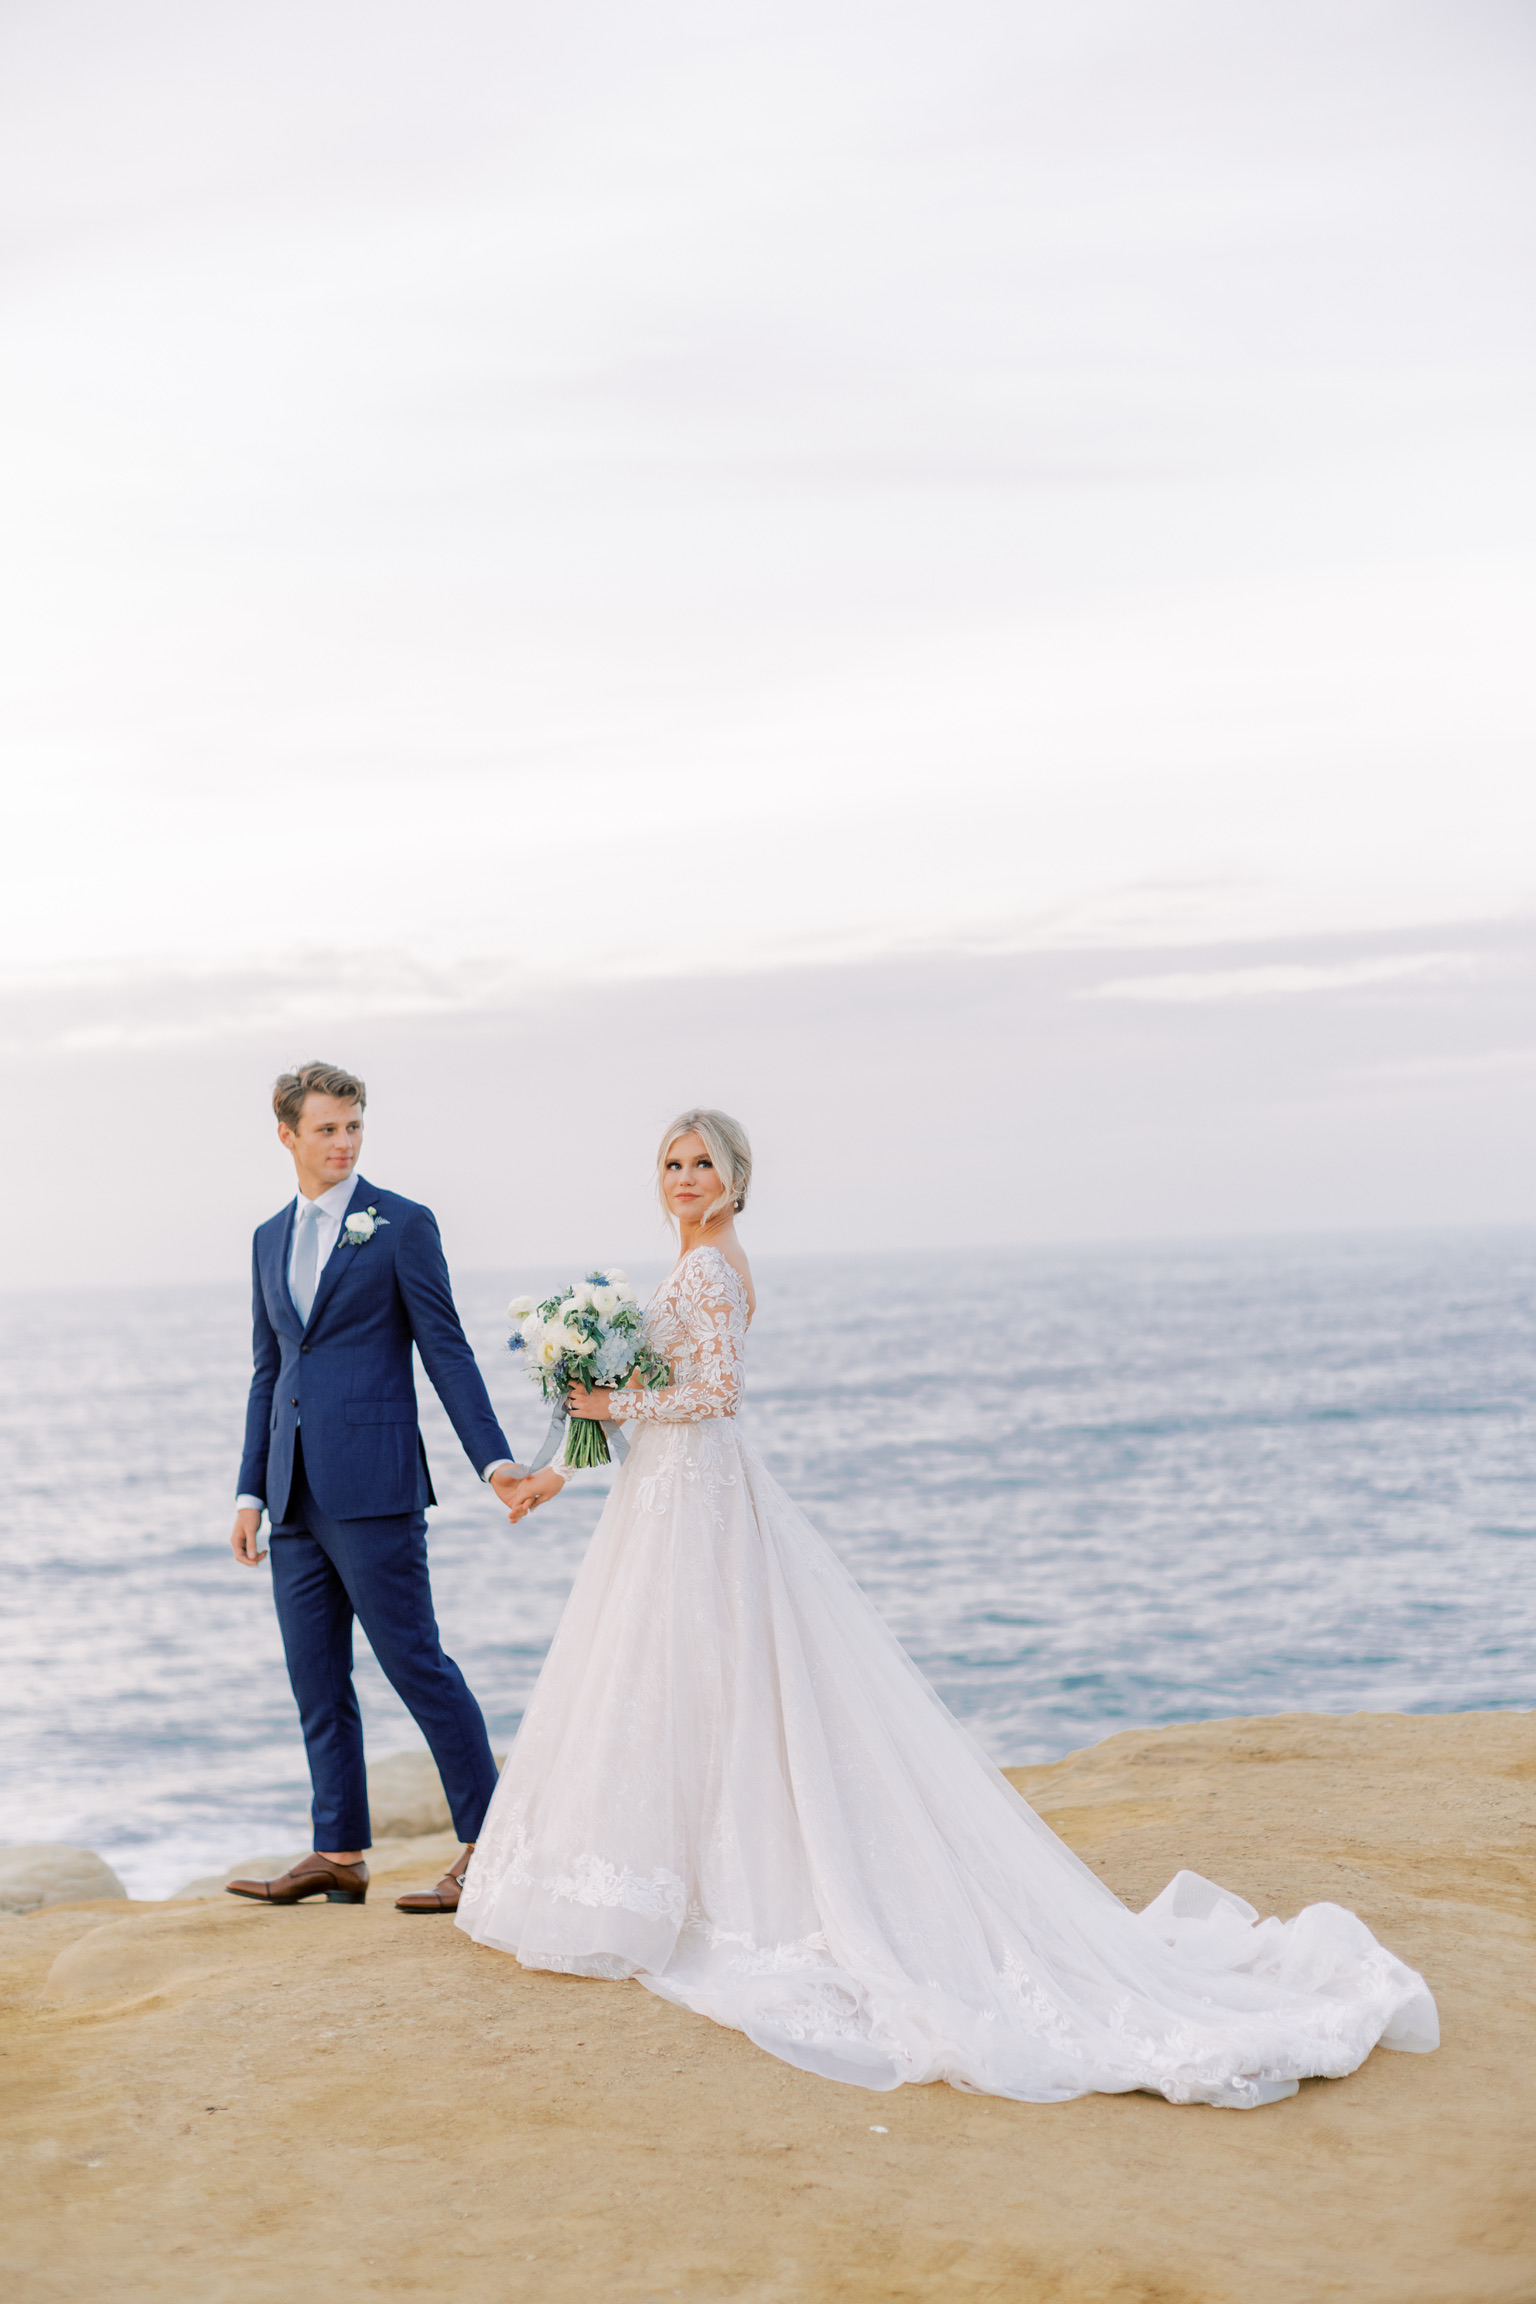 Mariée portant une robe de mariée en dentelle A-ligne avec des manches appelée Zander par Sottero et Midgley sur la falaise du bord de mer avec le marié